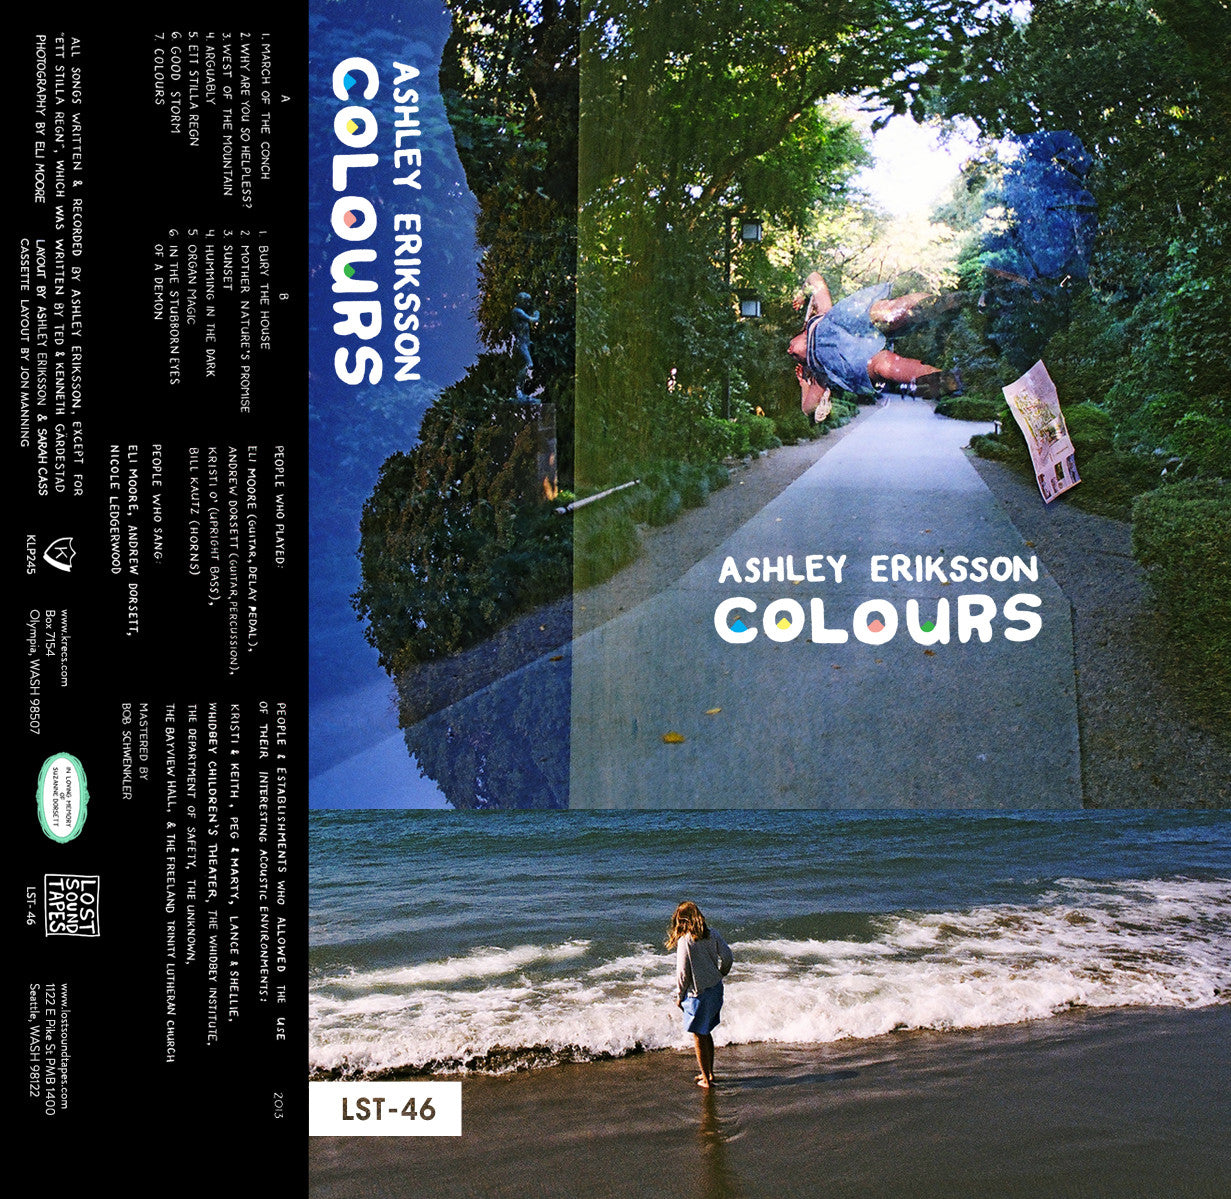 ASHLEY ERIKSSON "Colours" cassette tape